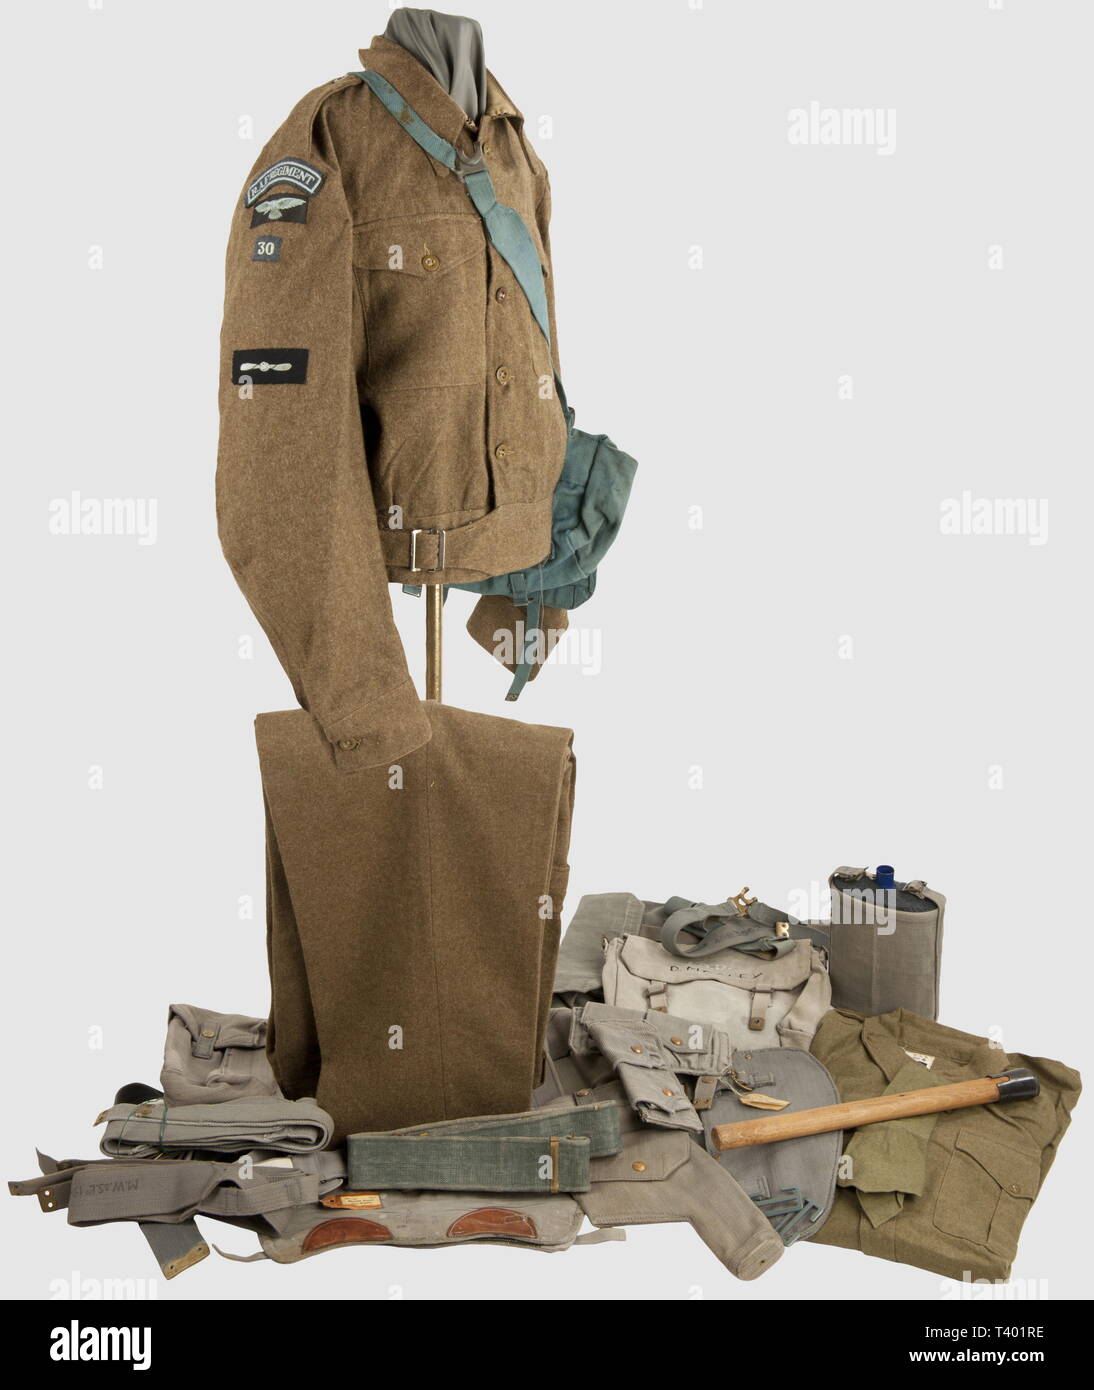 ARMEES ALLIEES 1939-1945, Soldat/officier Royal Air Force, Blouson BD daté 44, pantalon assorti belge, chemise et cravate flanelle kaki, ceinturon, paire de pouches (42), paires de bretelles X- (2 paires) et L-Straps (41-42), porte-baio web, outil individuel daté 42 (manche 44) dans étui après-guerre, paire de guêtrons (cuirs de renfort noirs et fauves) et havresac web, bidon émaillé bleu avec étui, masque à gaz dans son sac (respectivement datés 43 et 41, non illustrés), paire d'aiguillettes web (42?), paire de bretelles élastiques de pantalon, , Additional-Rights-Clearance-Info-Not-Available Stock Photo